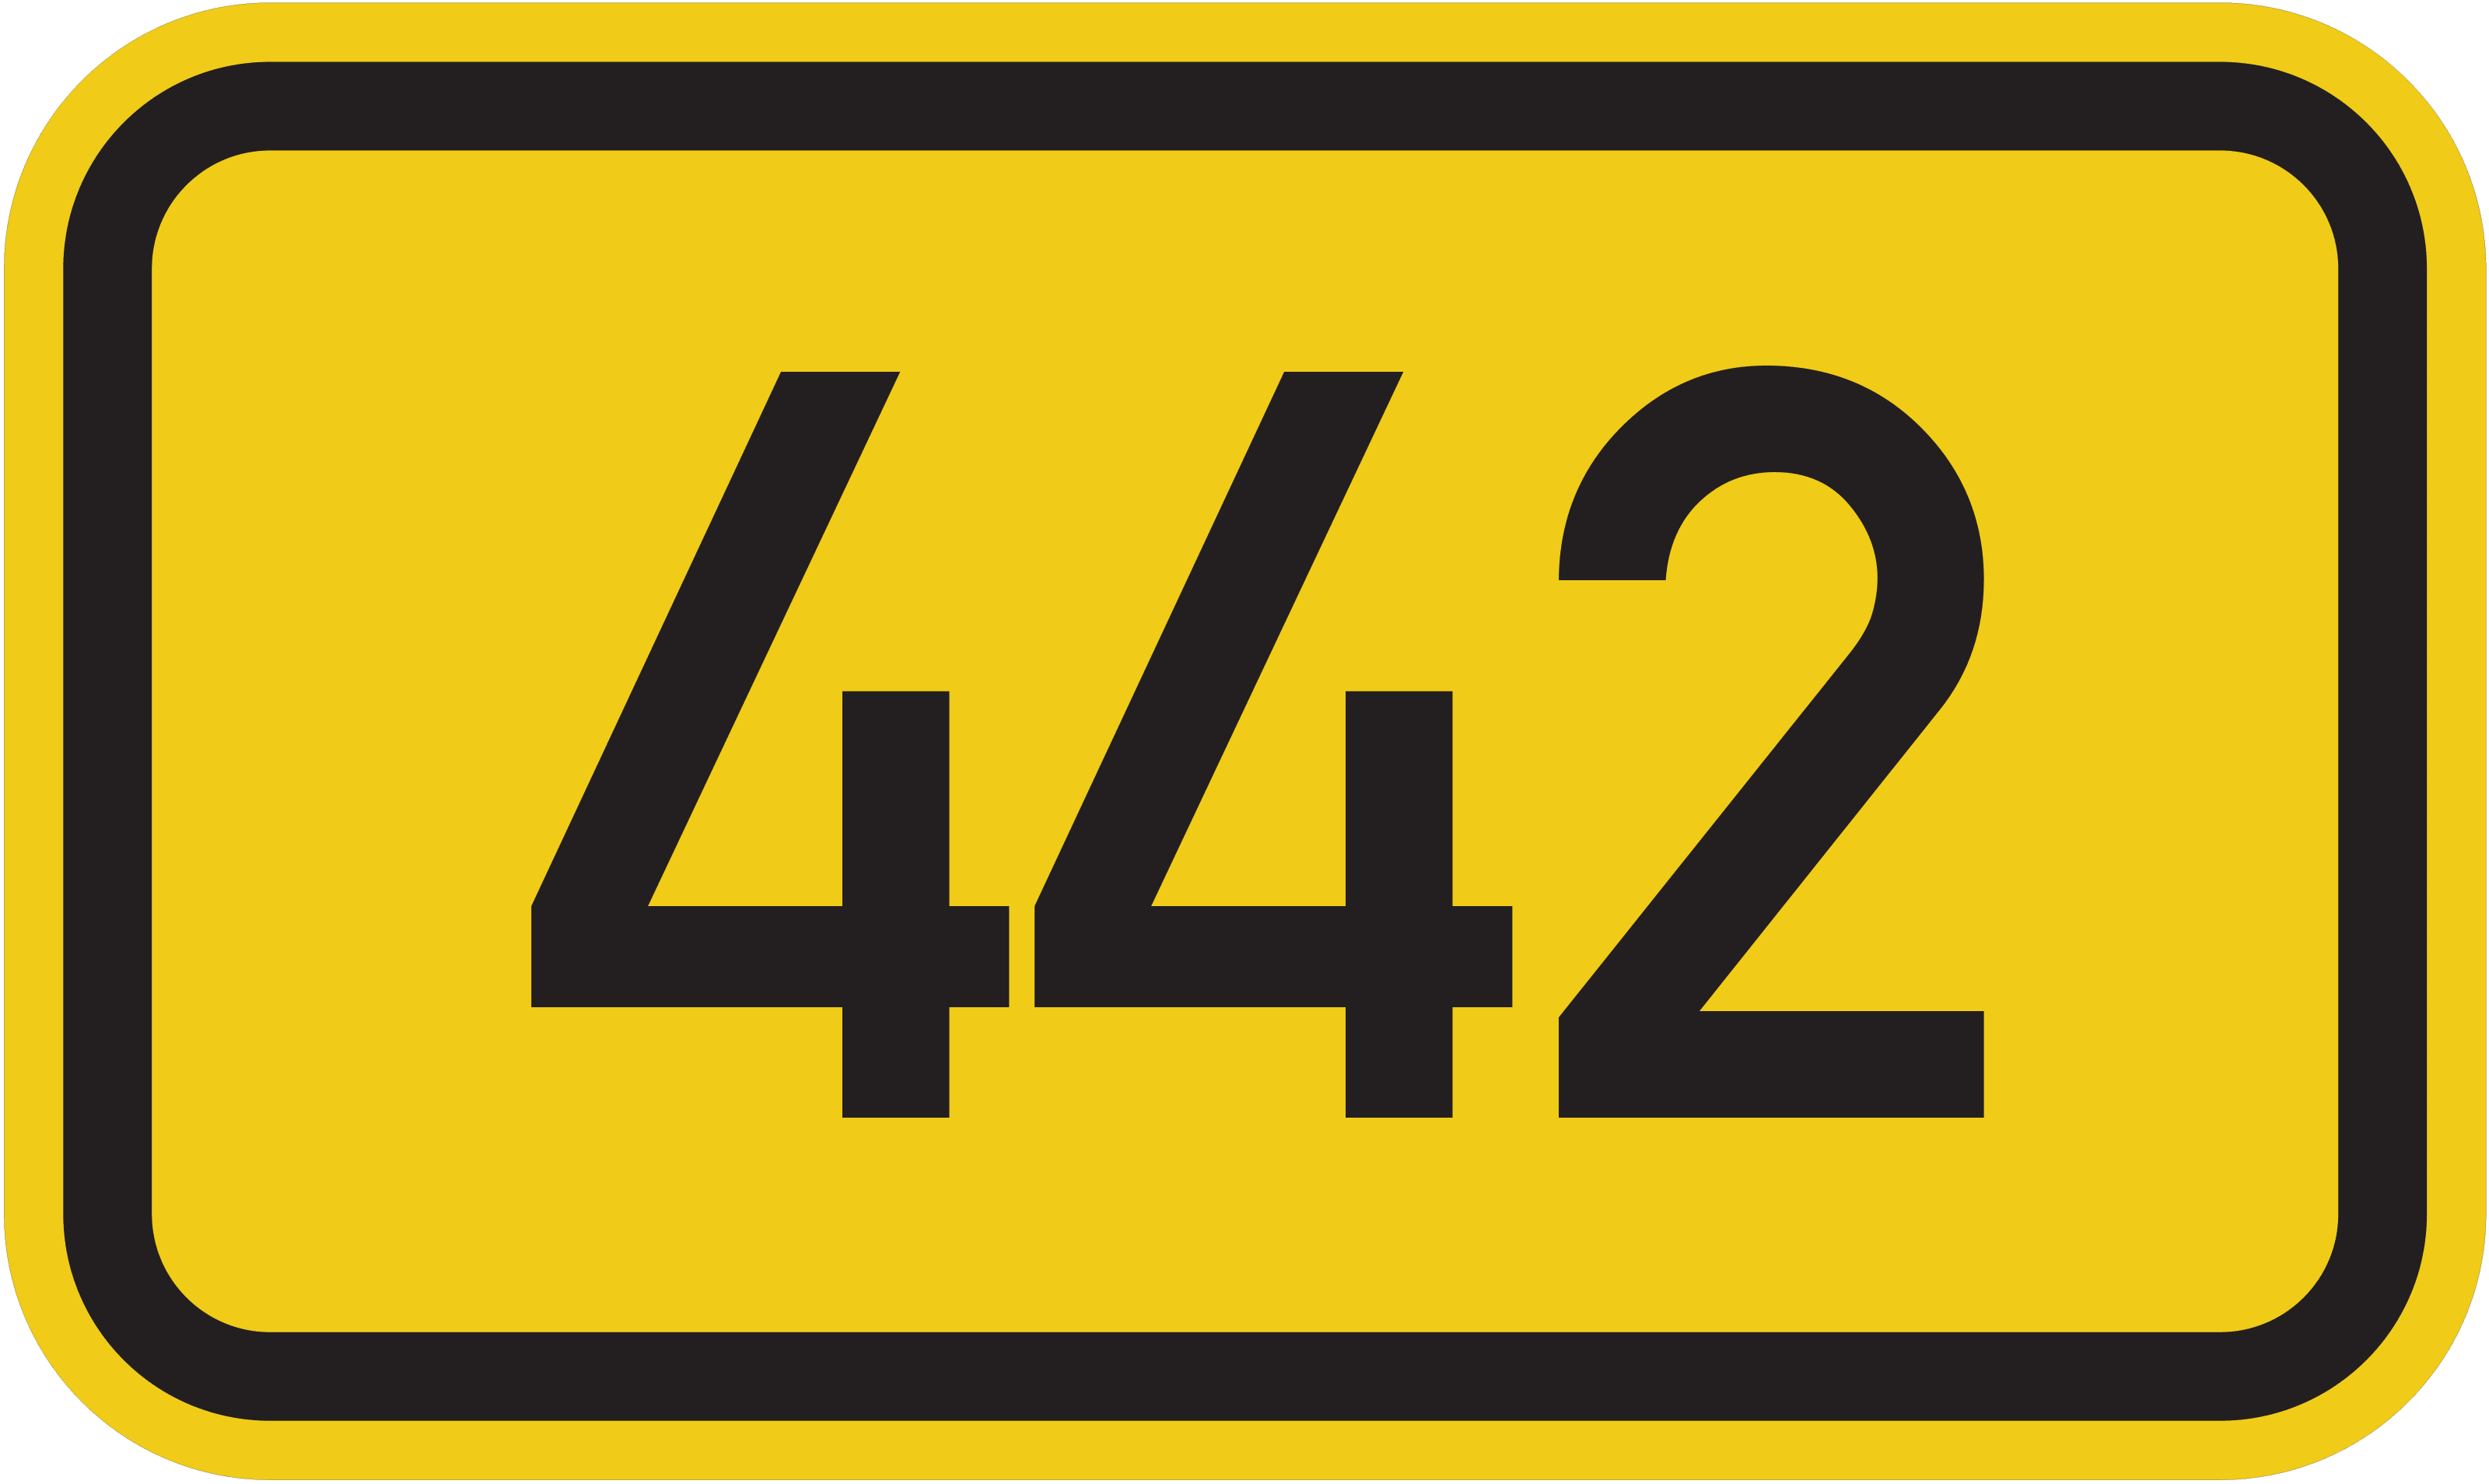 Bundesstraße B 442